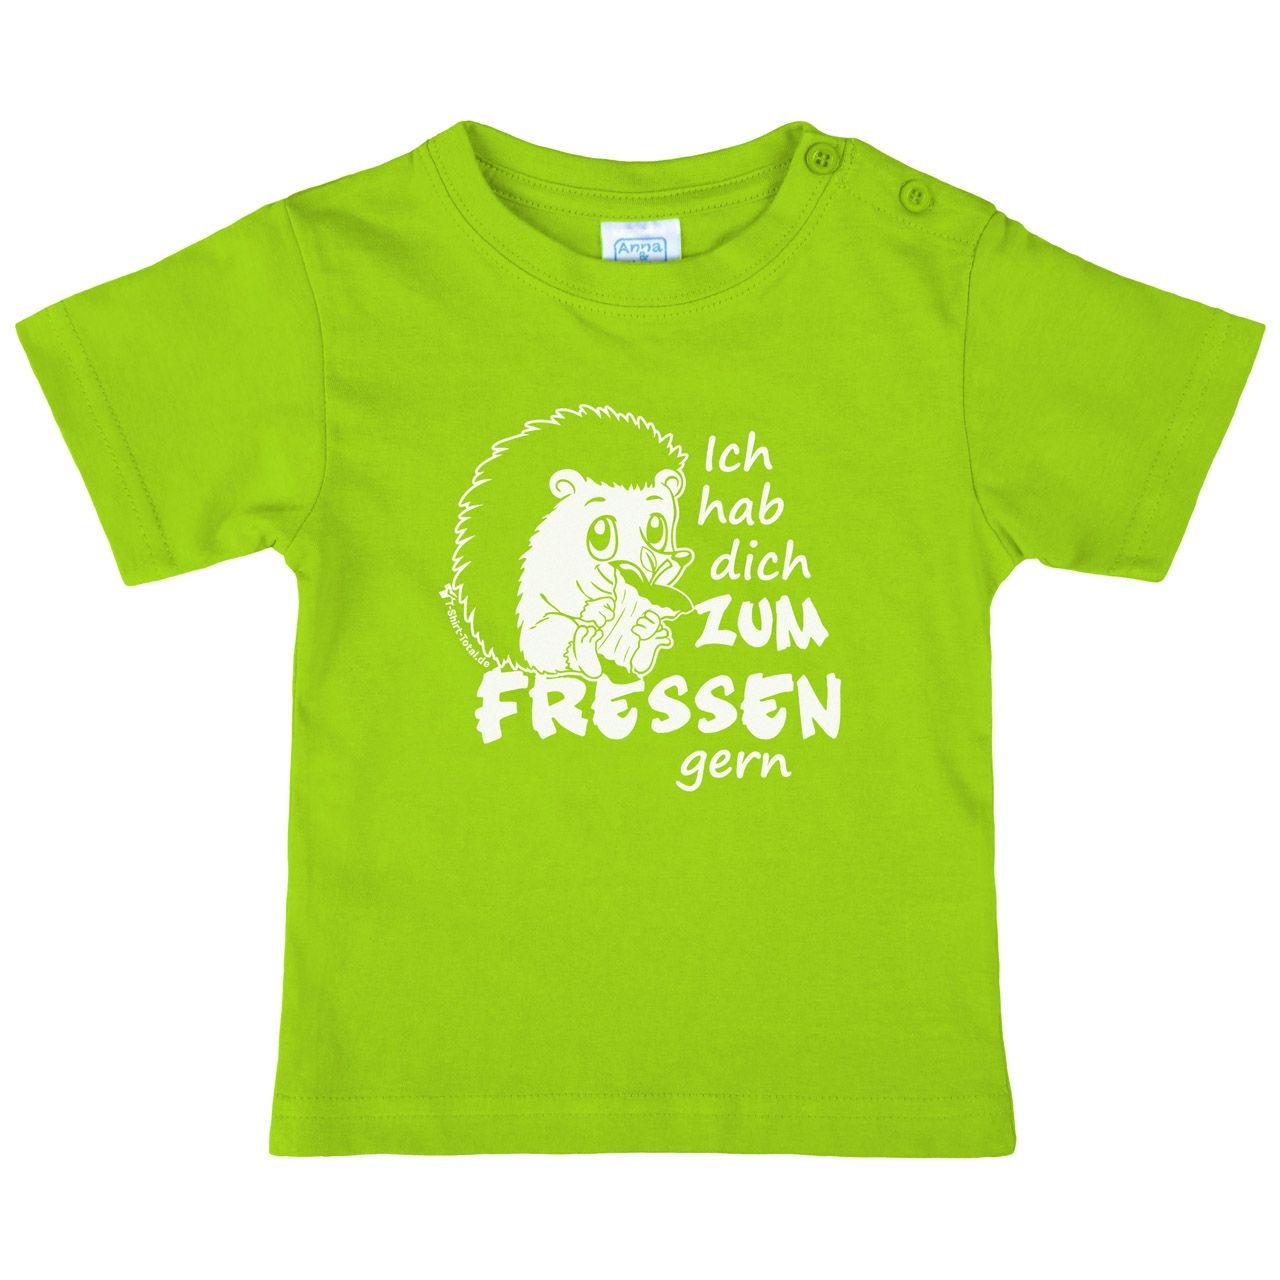 Zum fressen gern Kinder T-Shirt hellgrün 80 / 86